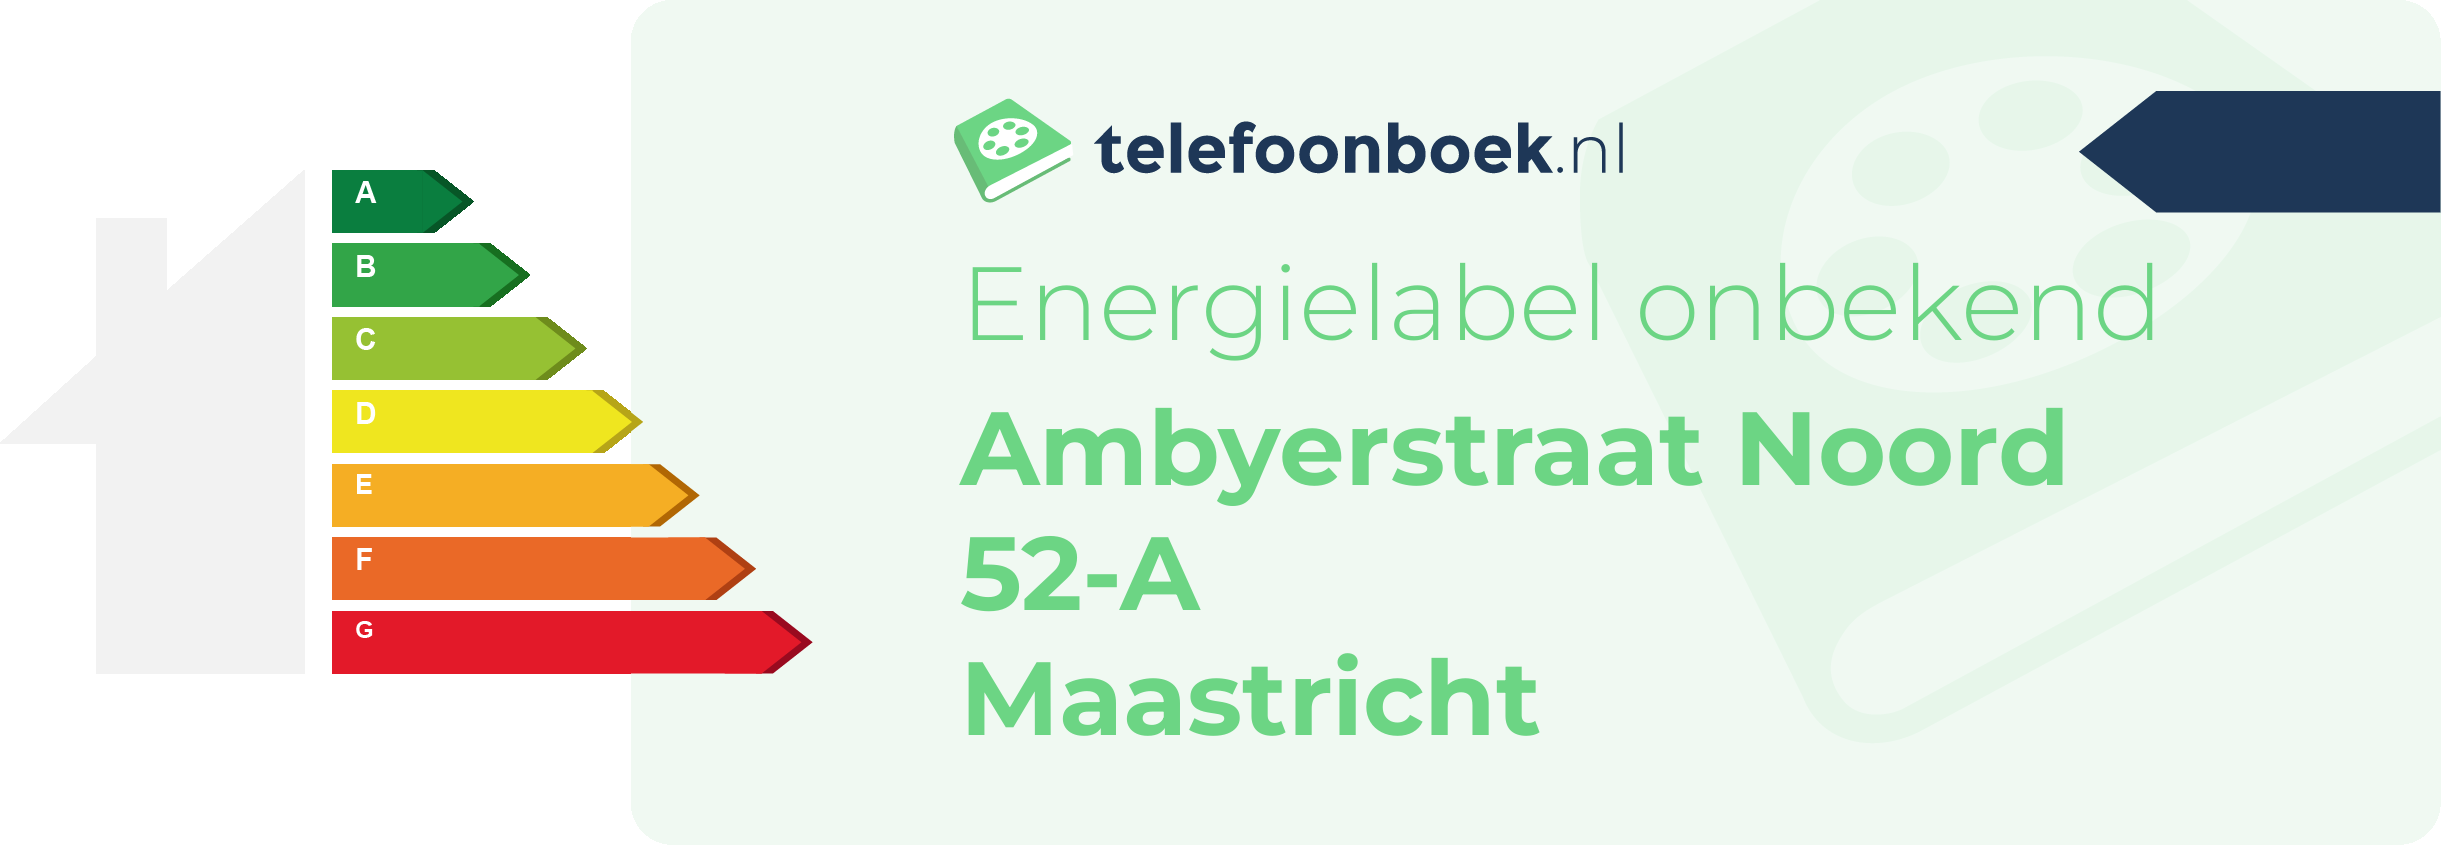 Energielabel Ambyerstraat Noord 52-A Maastricht